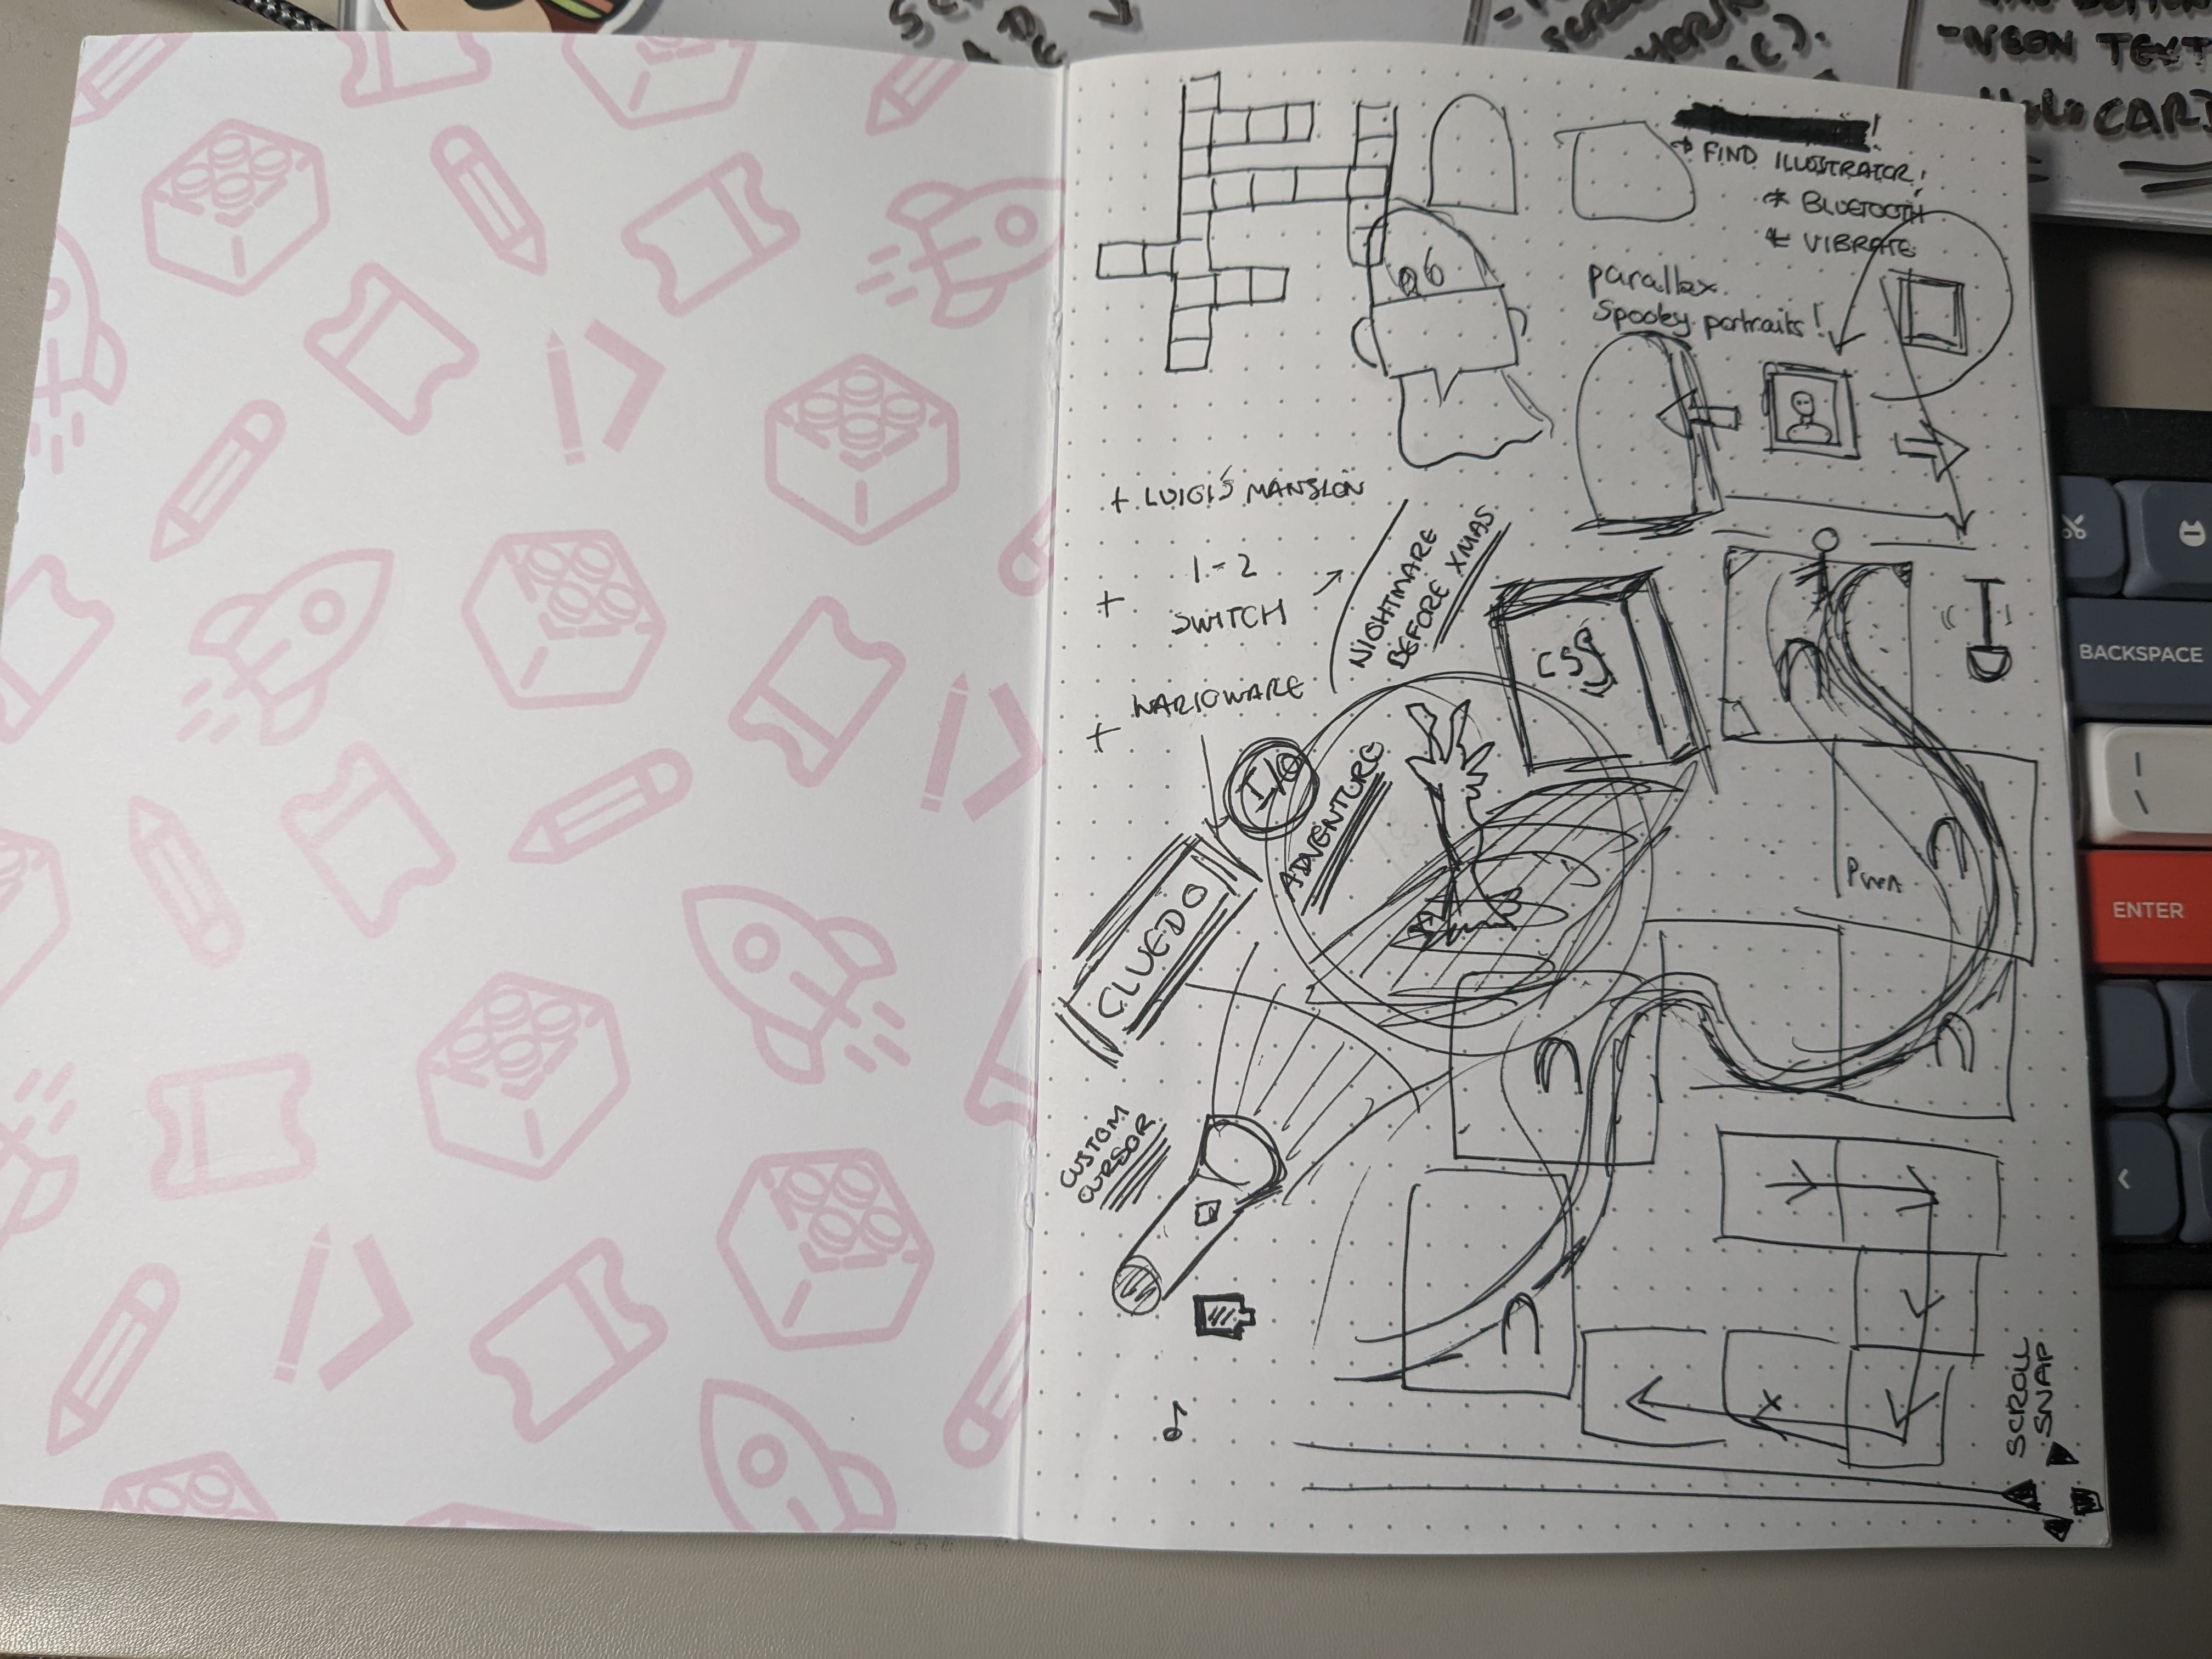 Ein Notizbuch liegt auf einem Schreibtisch mit verschiedenen Zeichnungen und Skizzen, die mit dem Projekt zu tun haben.